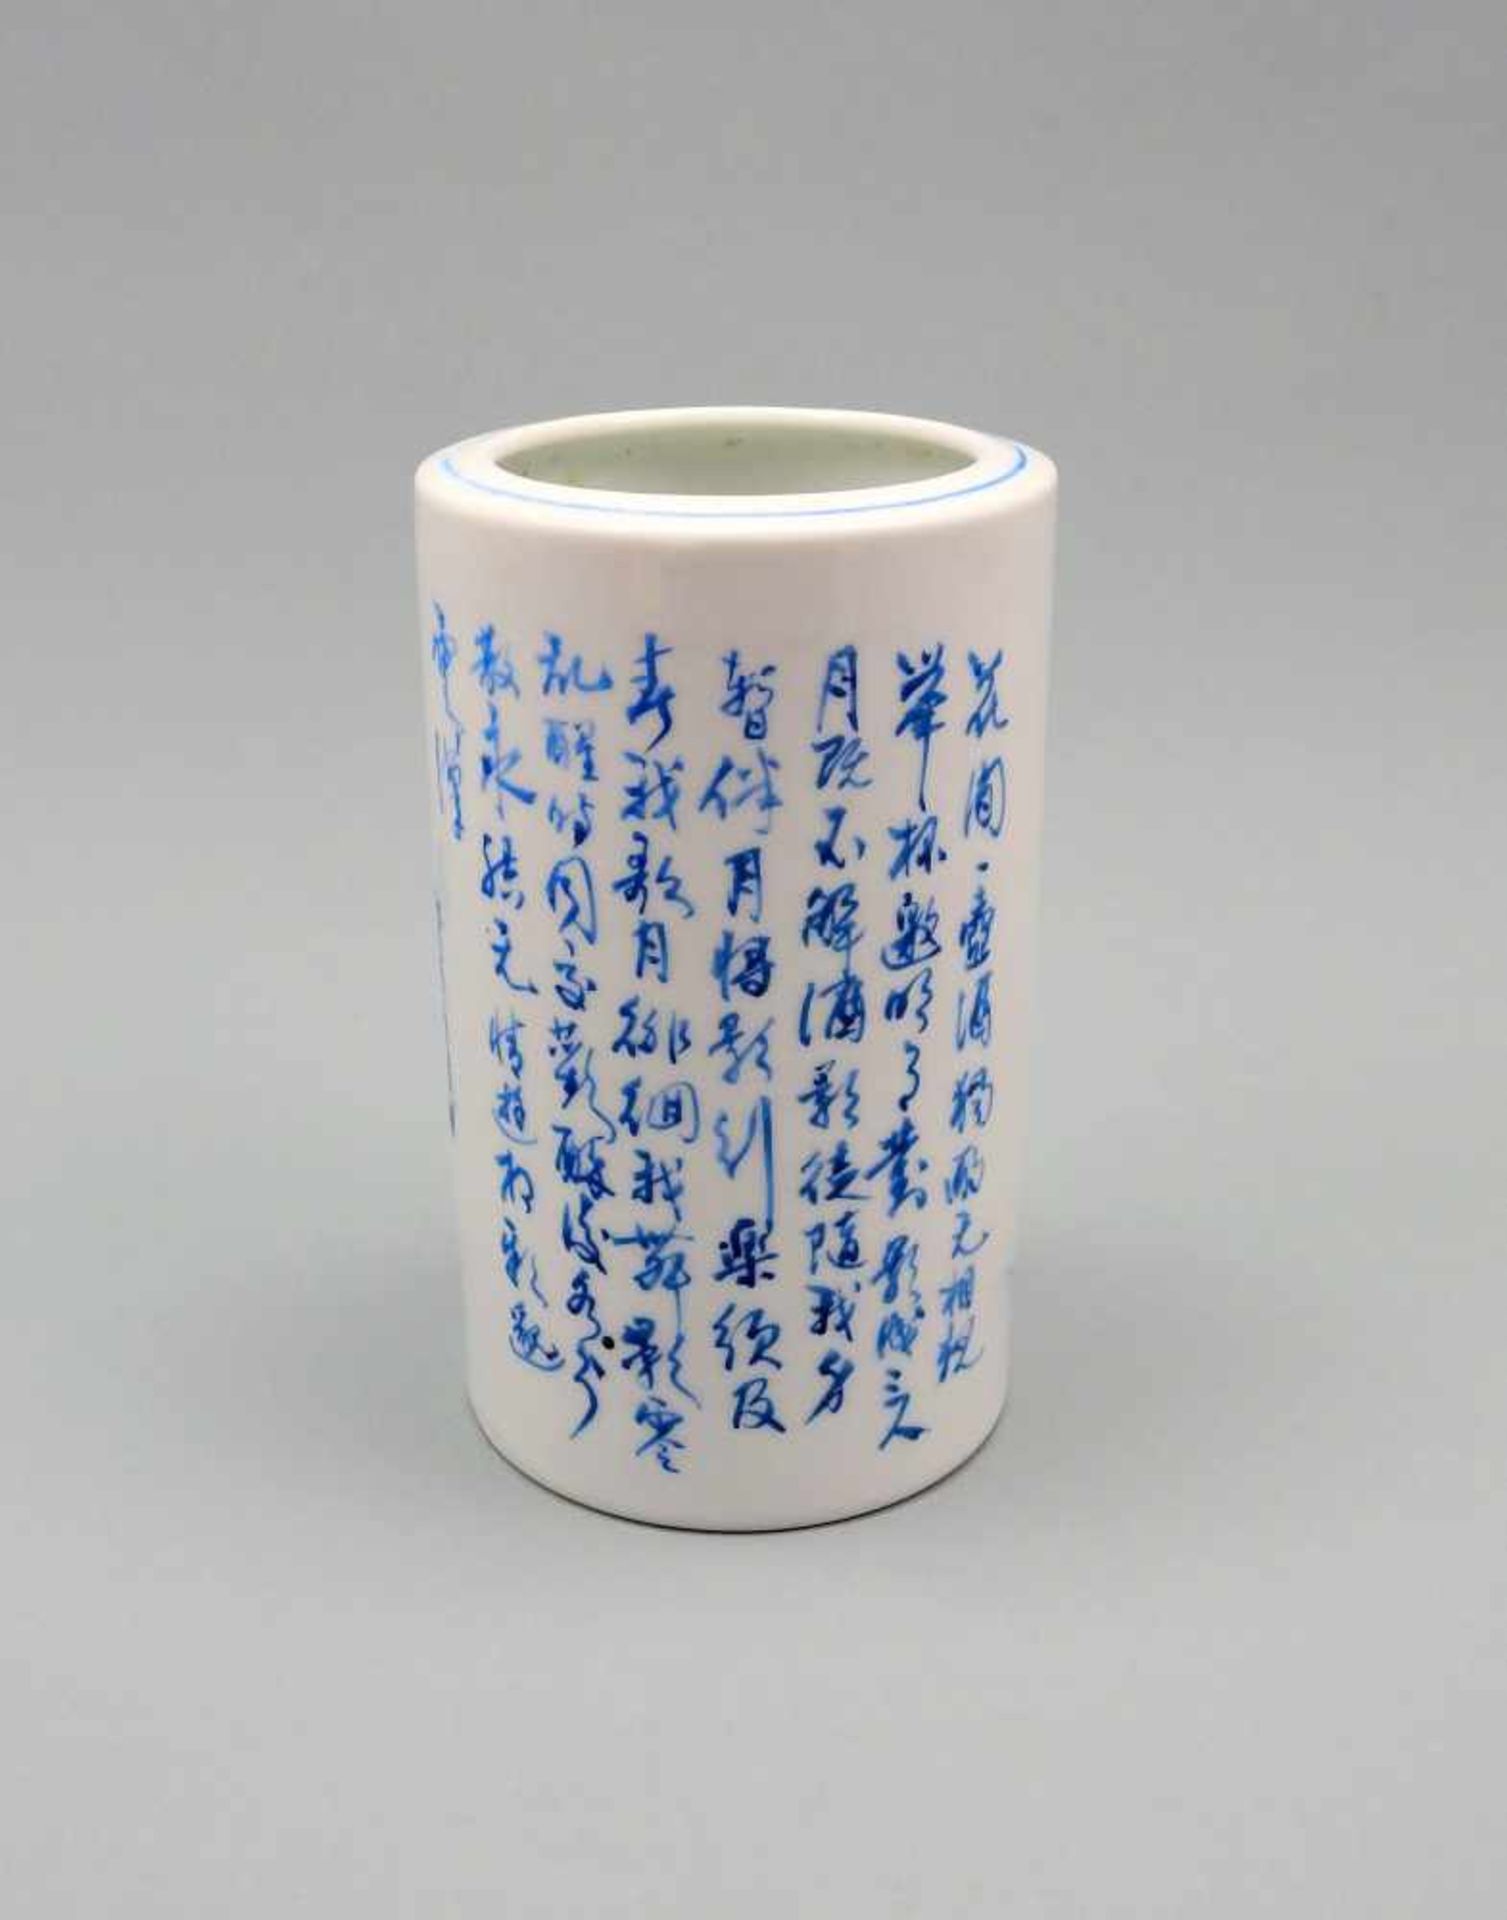 PinselwascherPorzellan, runde Vase deren Vorderseite einen chinesischen Mann in tradit - Image 3 of 5